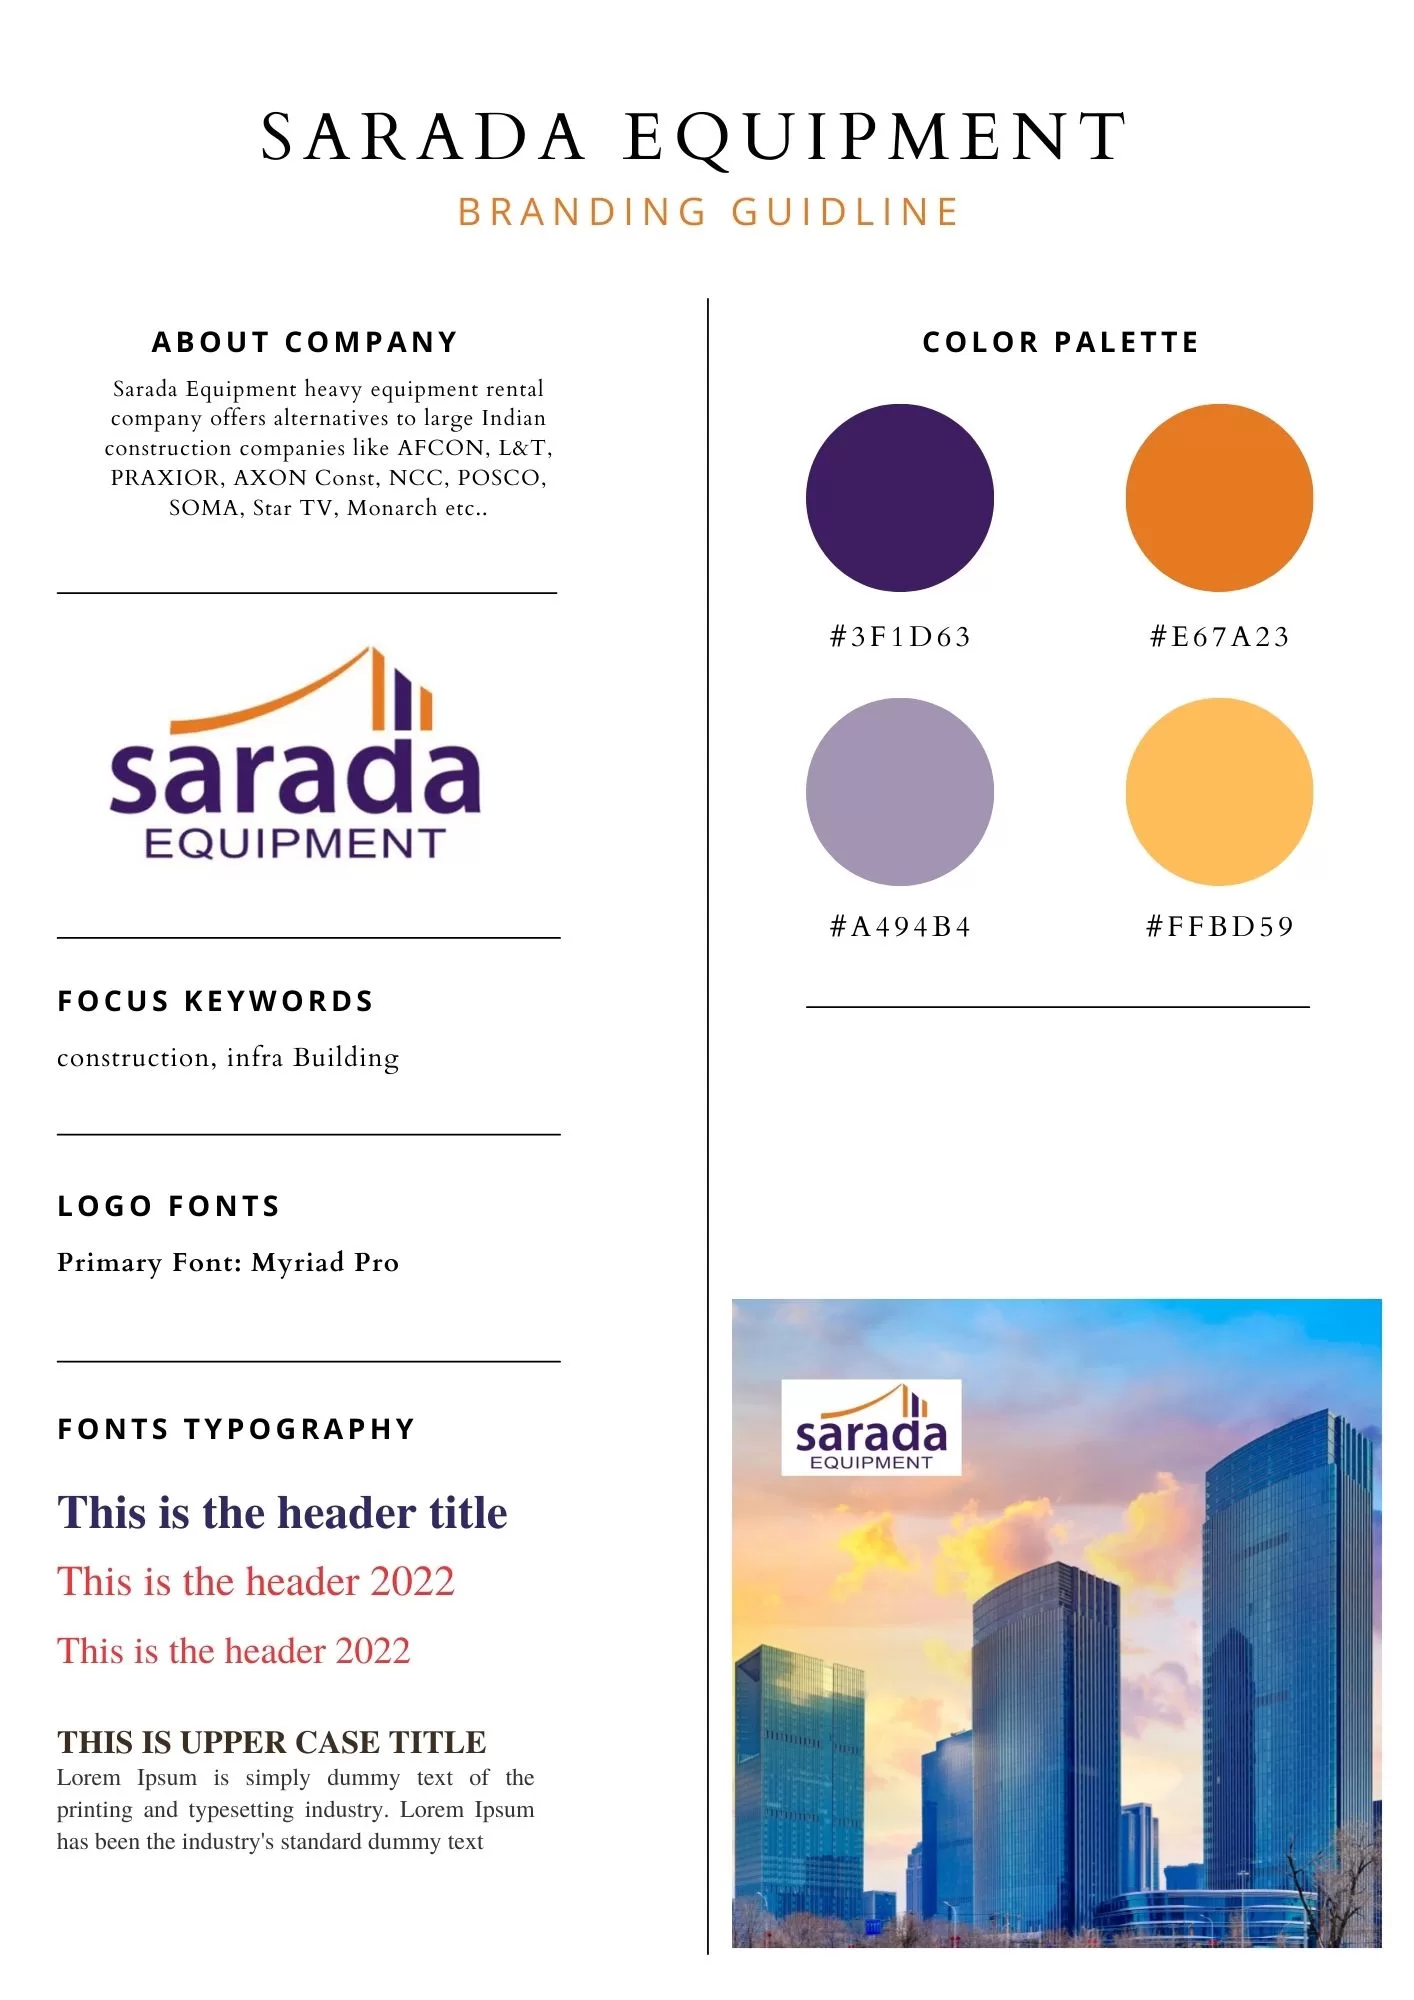 Sarada Equipment Branding